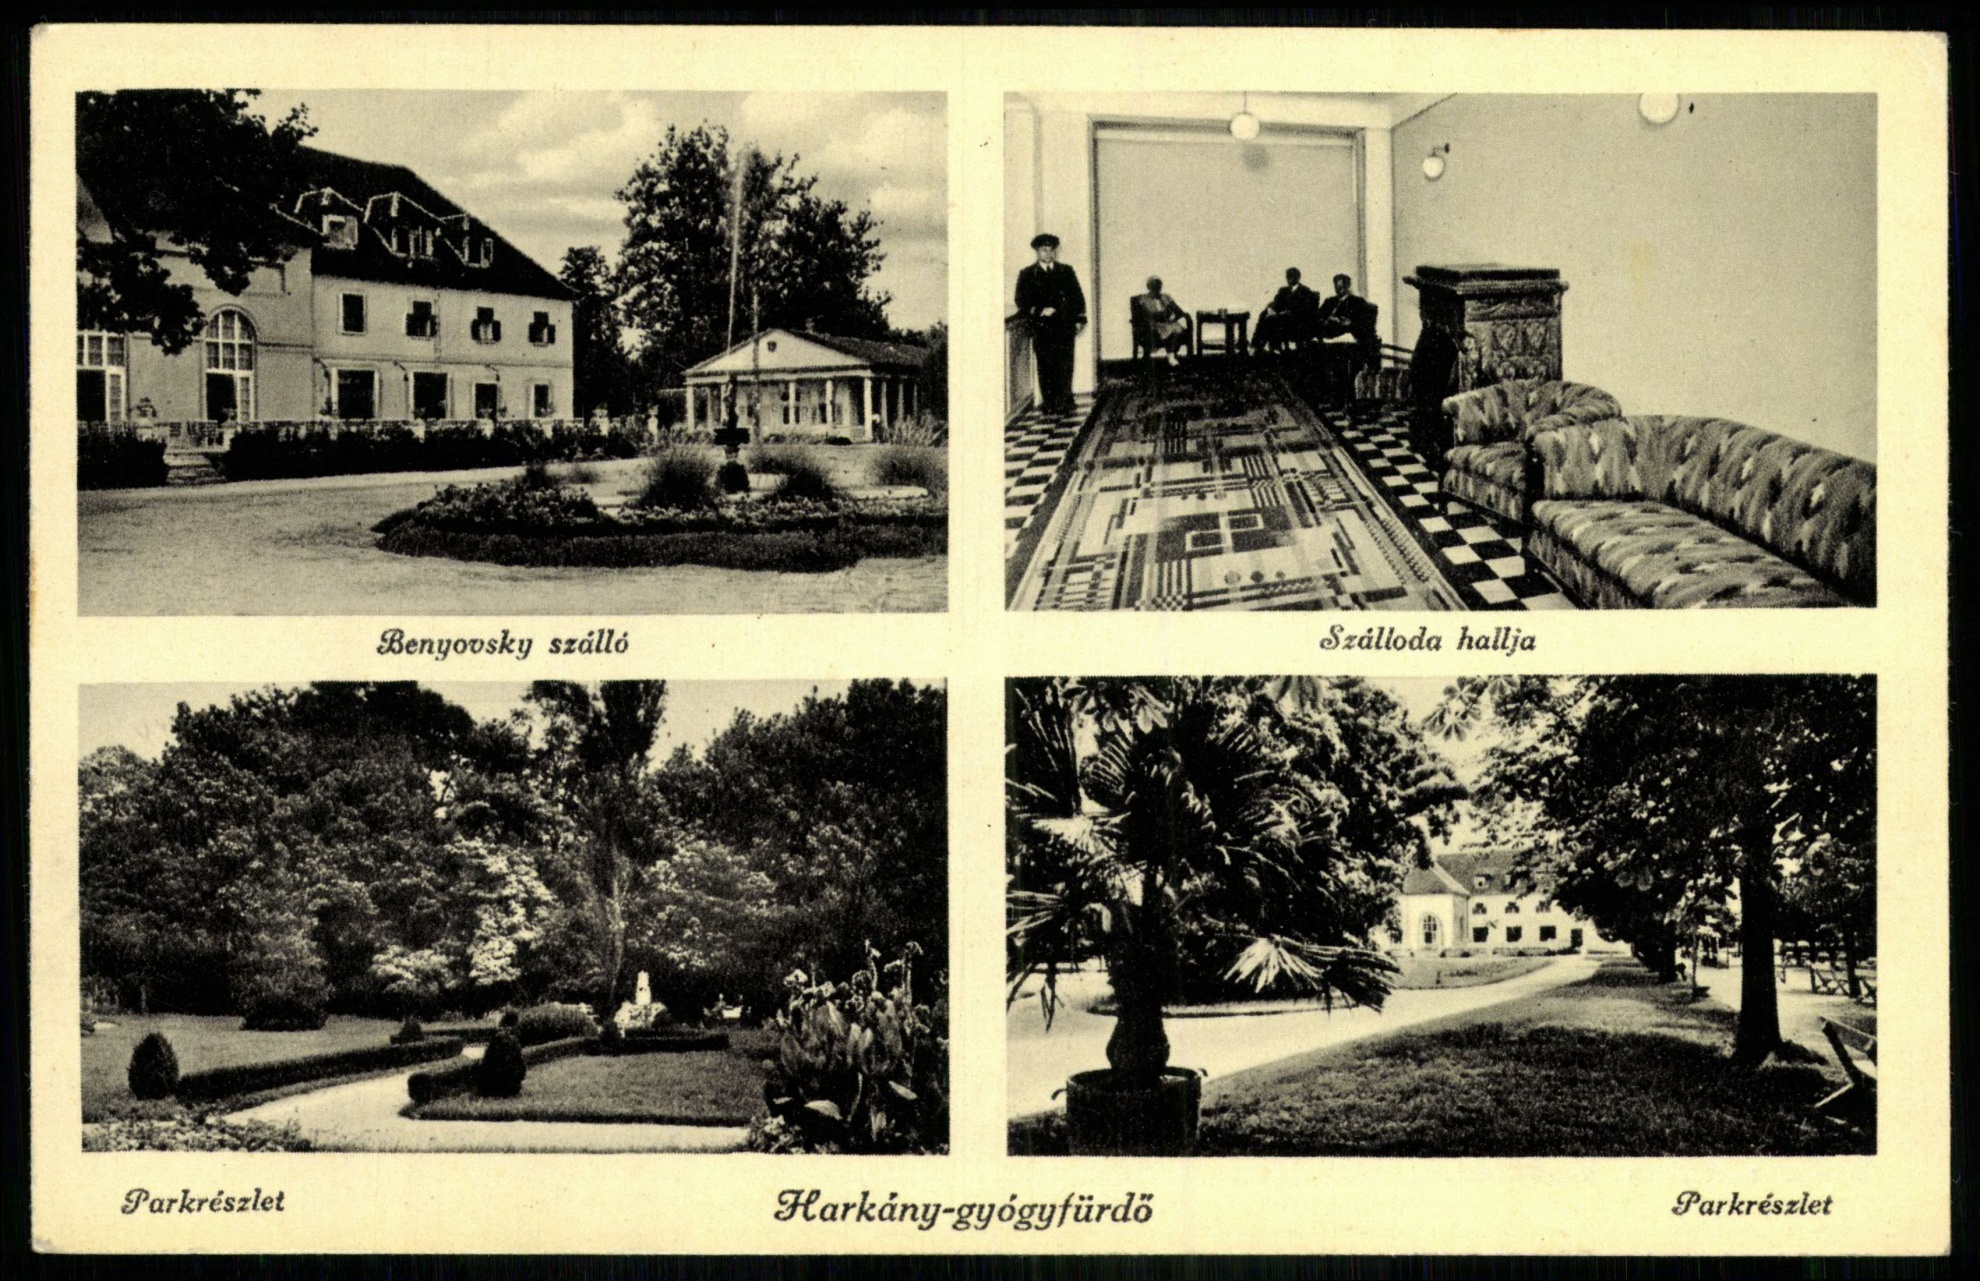 Harkány-gyógyfürdő Benyovszky szálló, Szálloda hallja, Parkrészlet, Parkrészlet (Magyar Kereskedelmi és Vendéglátóipari Múzeum CC BY-NC-ND)